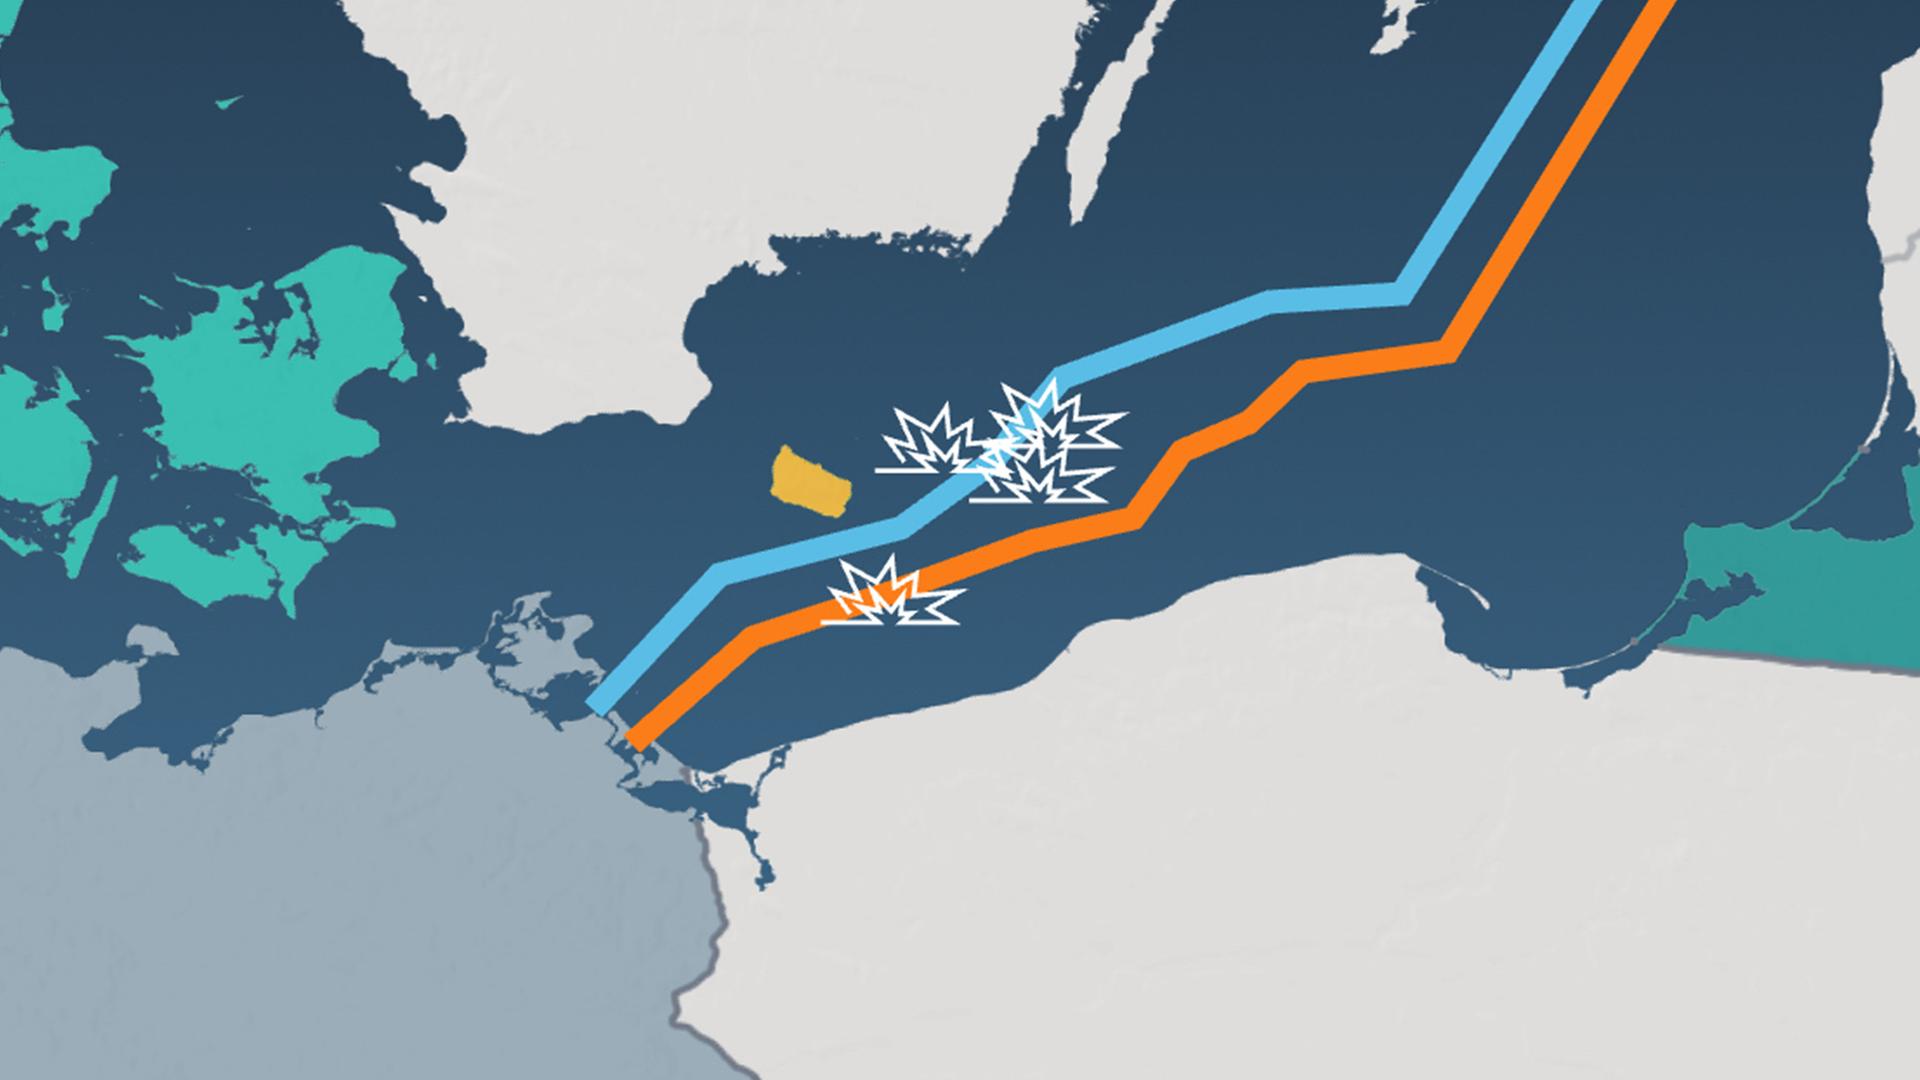 Karte von Nordeuropa, Explosion der Pipelines symbolisch dargestellt